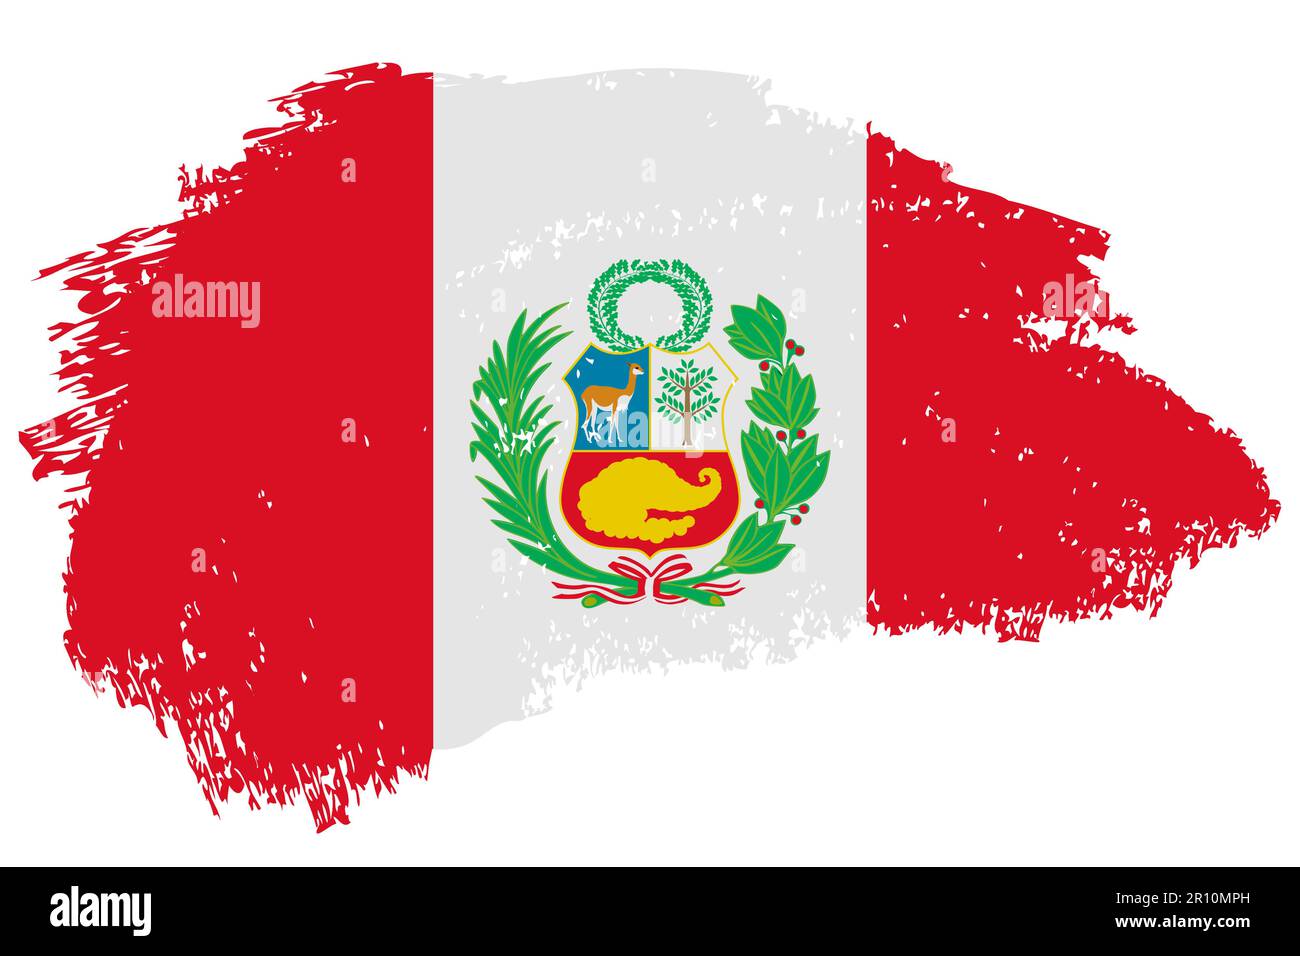 Hintergrund der Peru-Pinselstrichfahne. Handgezeichnetes isoliertes Banner im peruanischen Grunge-Stil. Stock Vektor